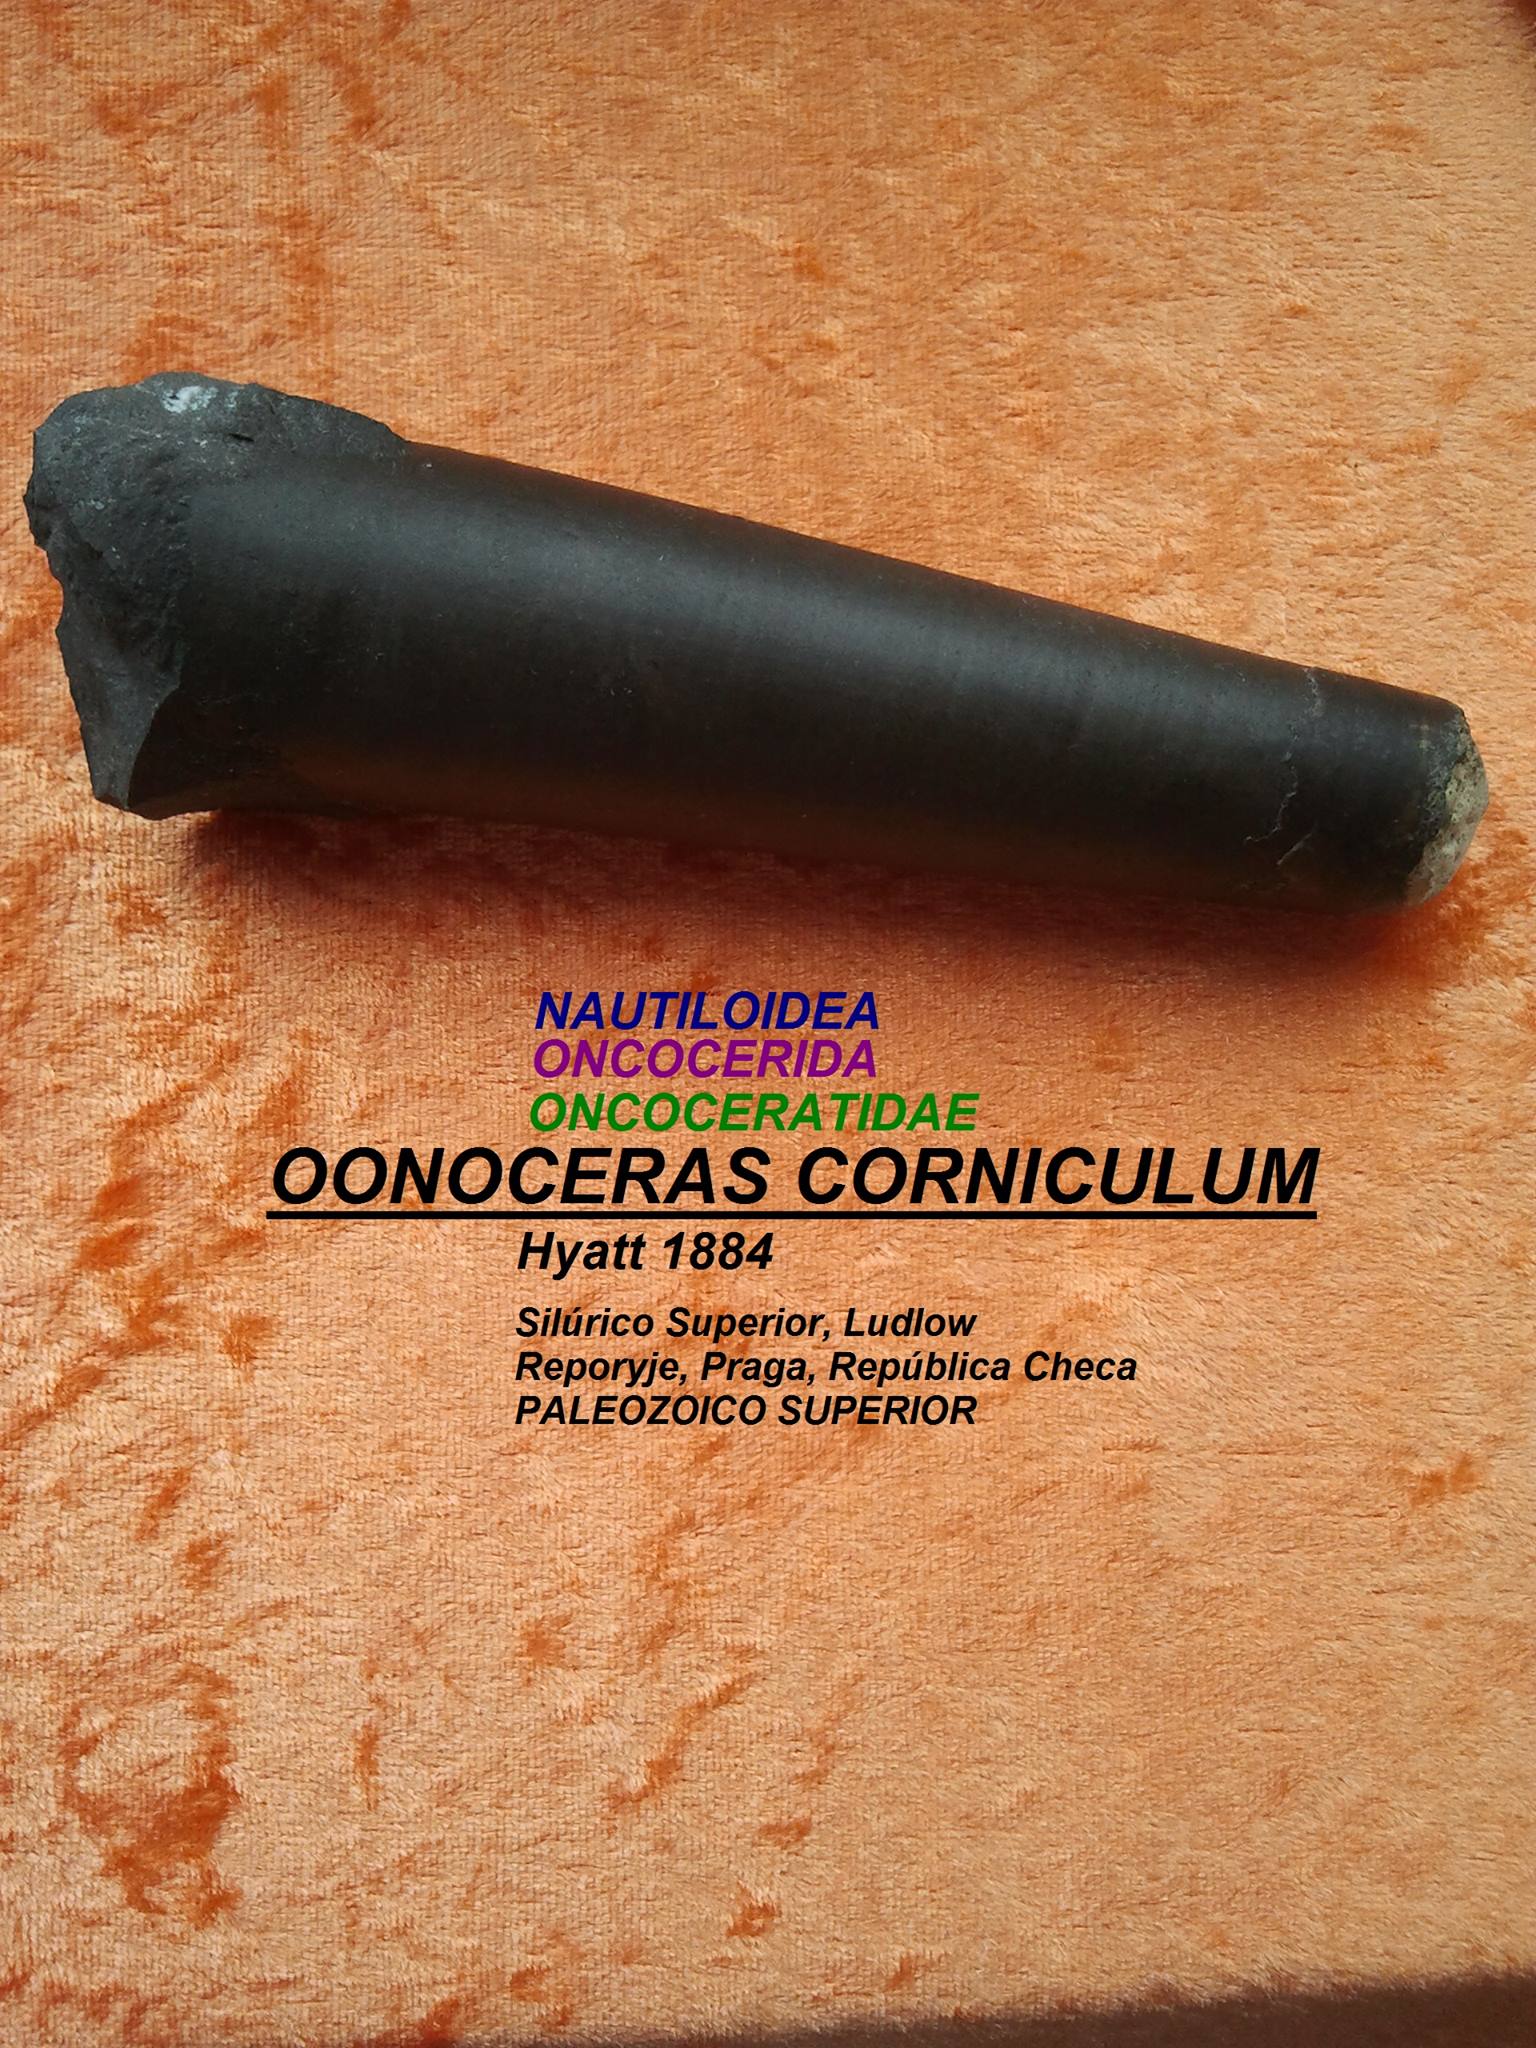 OONOCERAS CORNICULUM